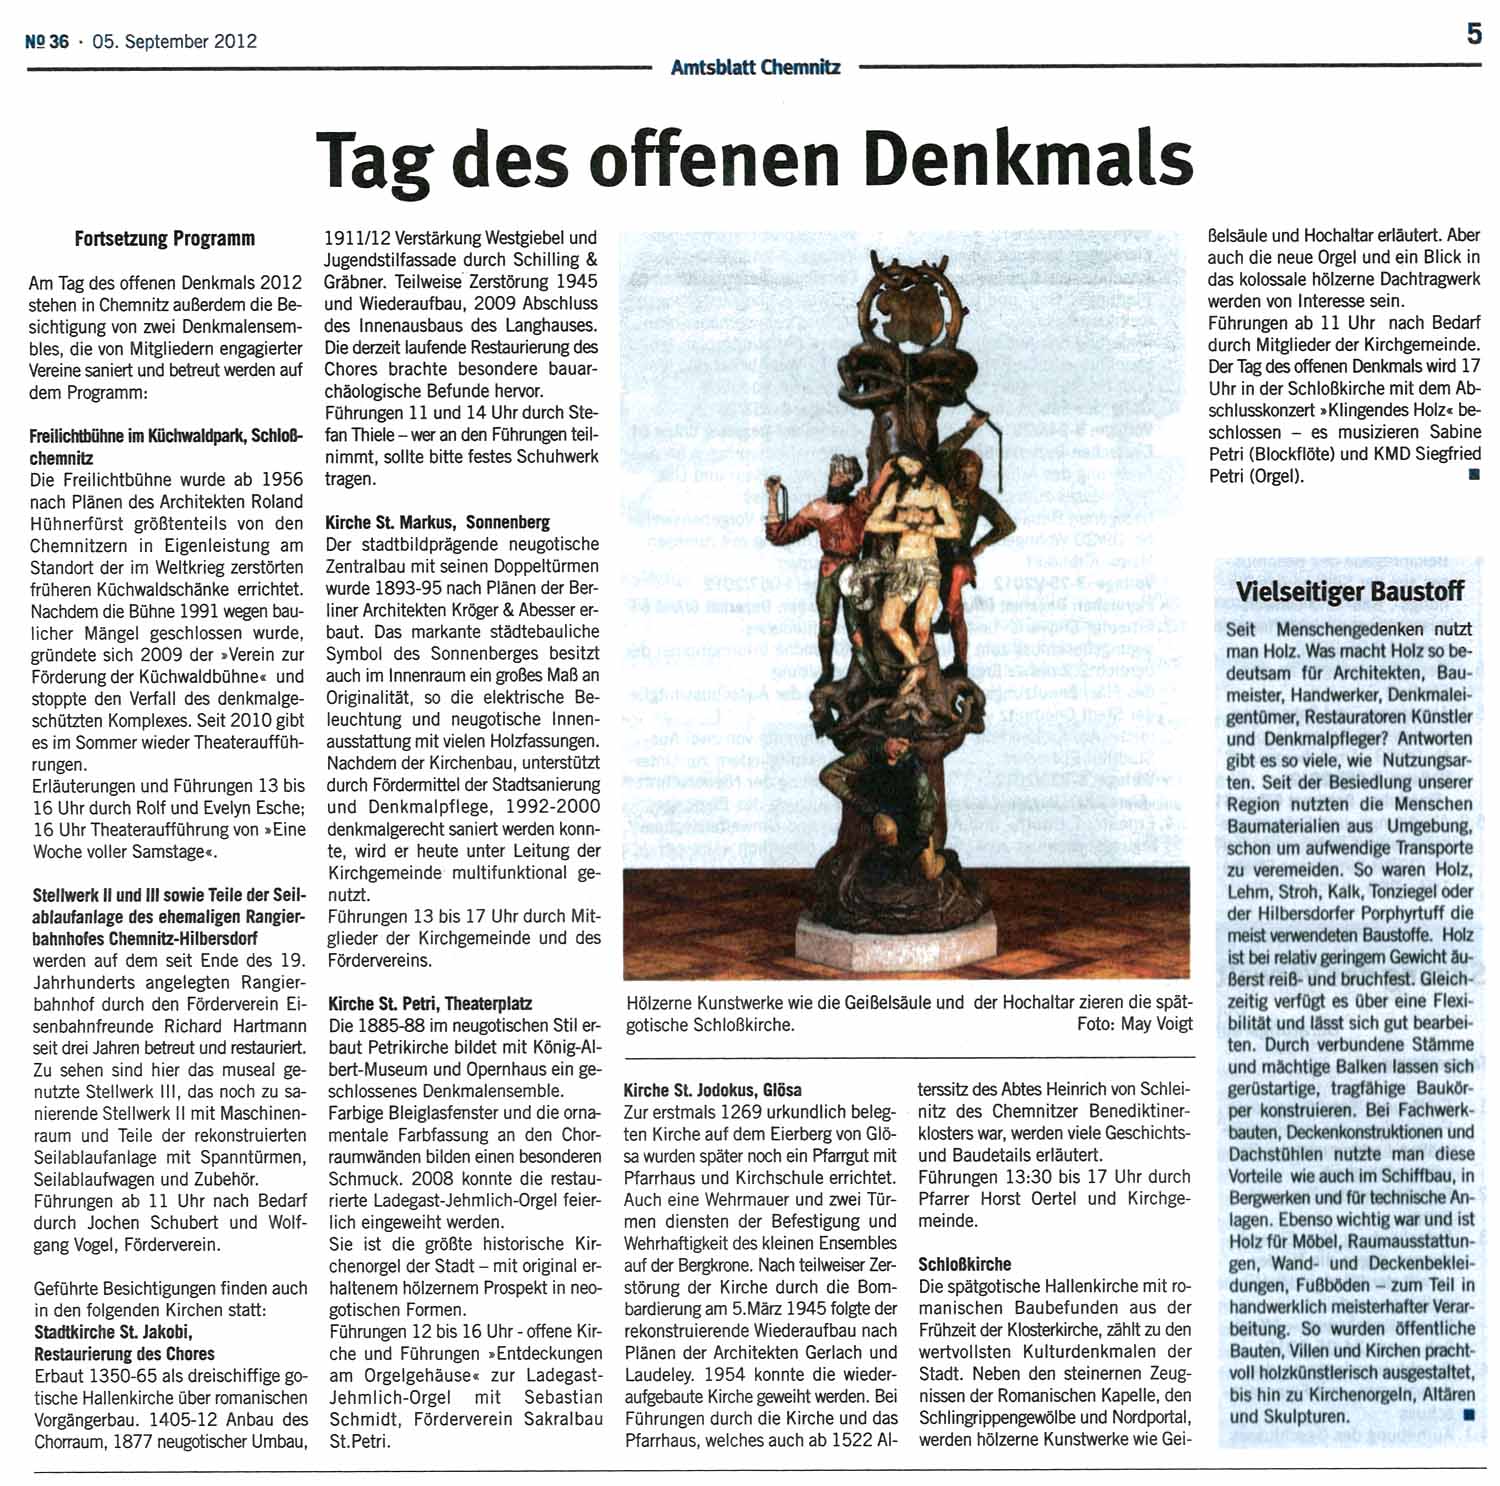 Amtsblatt  05 09 12